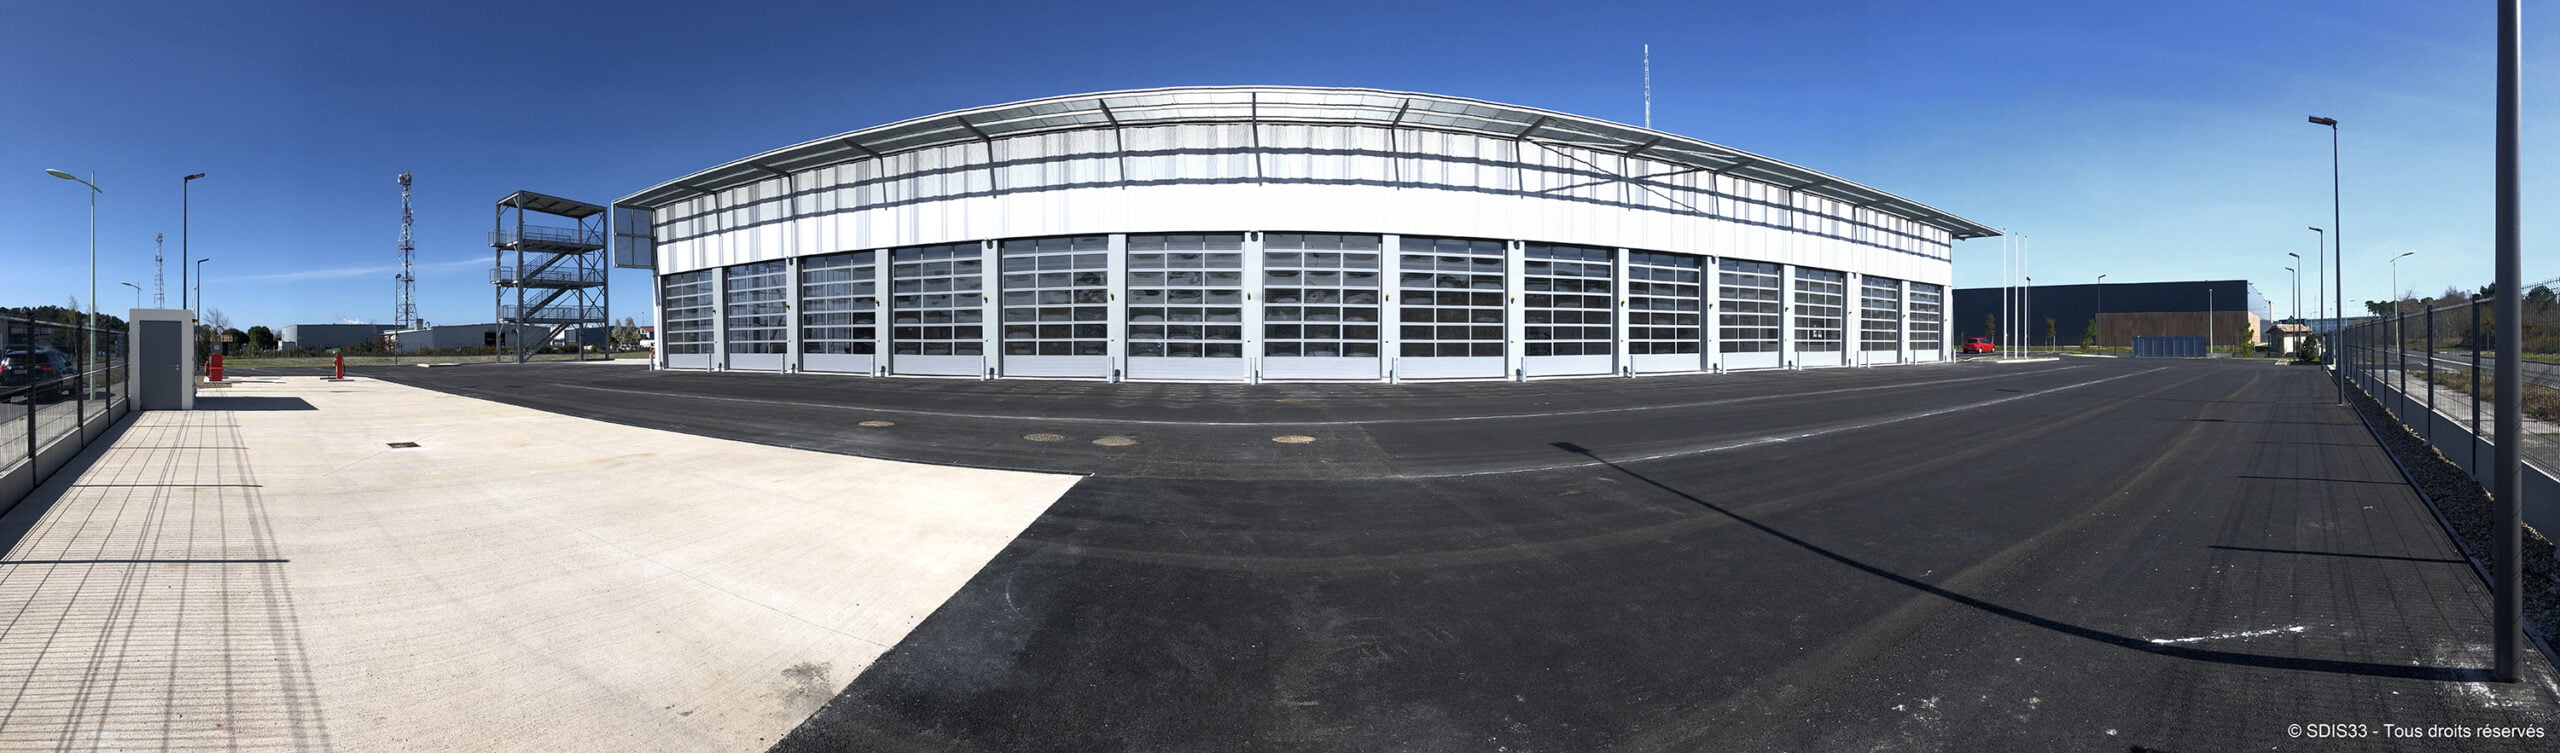 Inauguration le 27 février 2023 du Centre d'Incendie et de Secours de Biganos Audenge (Caserne des Pompiers) - Vue extérieure de la Caserne